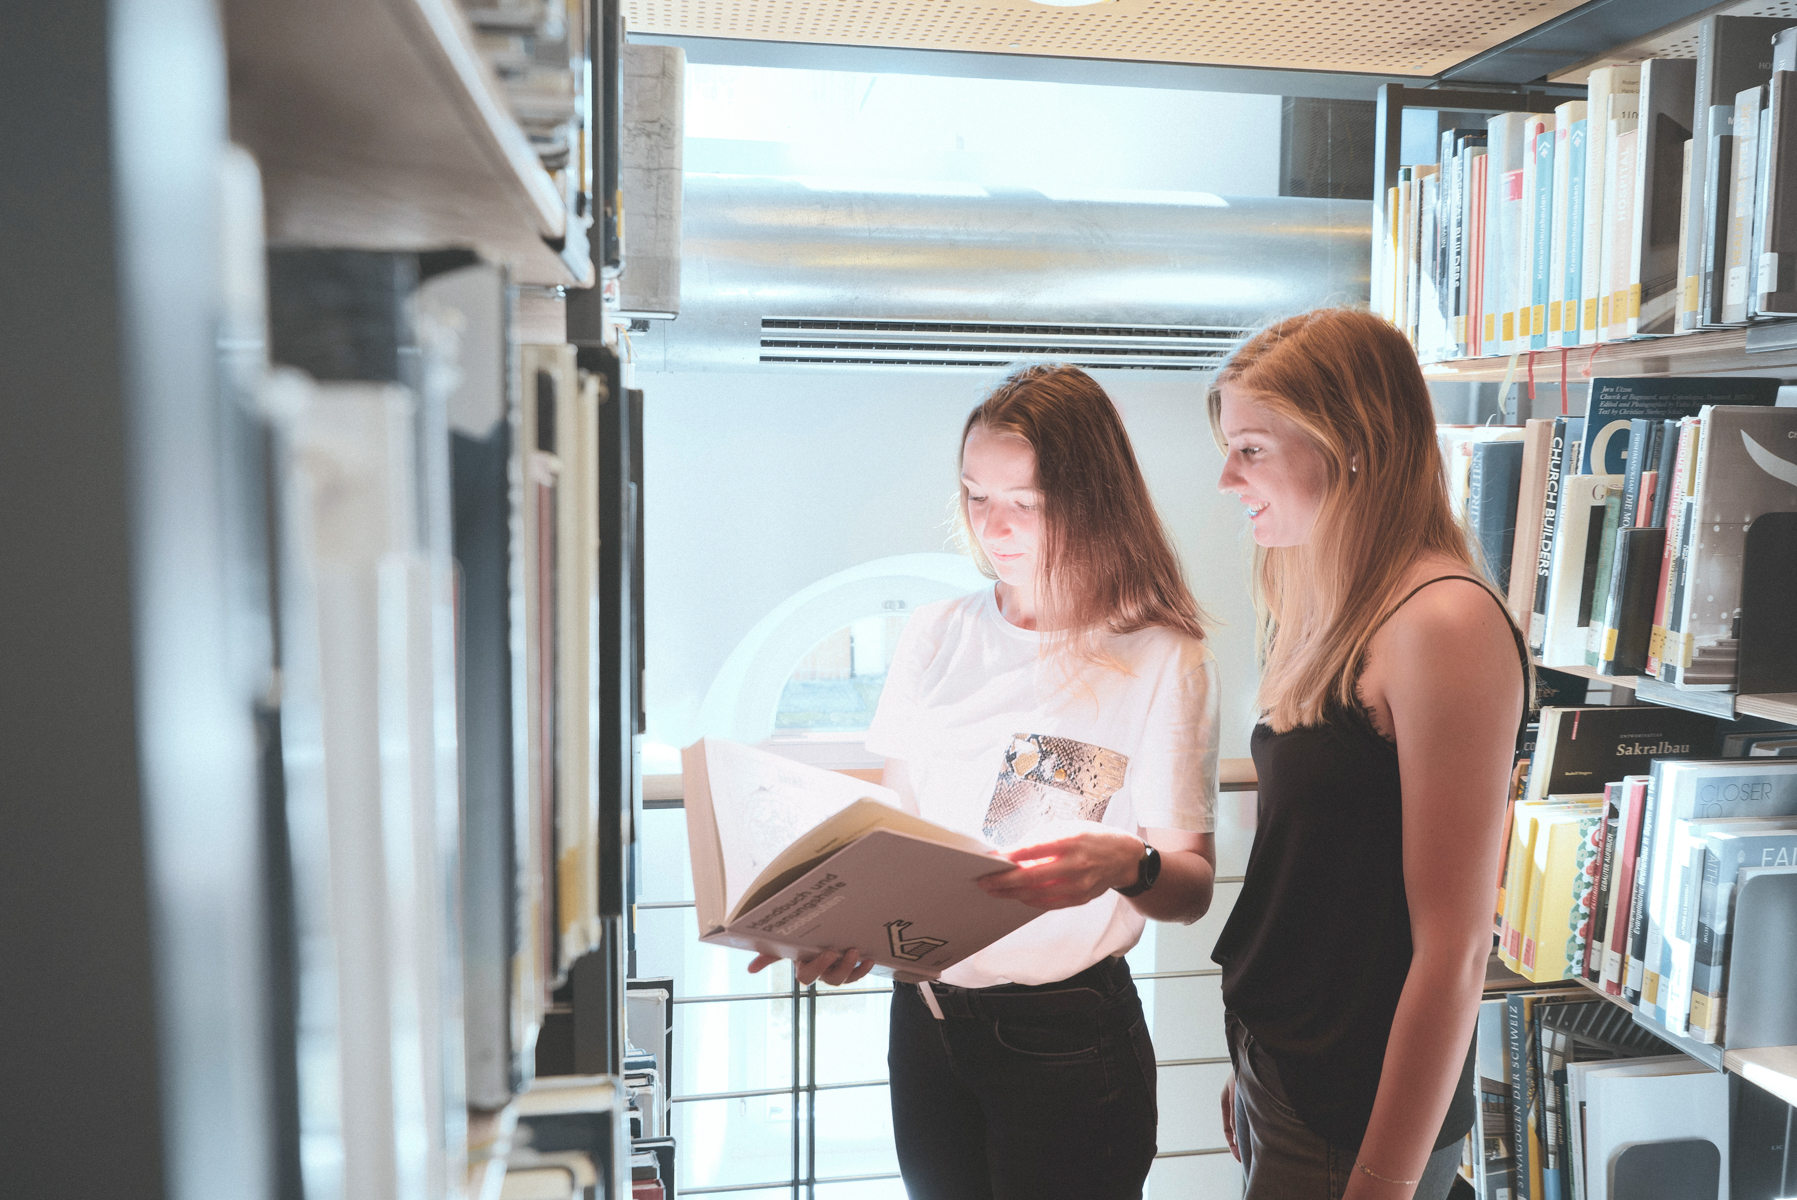 Zwei Studientinnen stehen zwischen Bücherregalen in der Bibliothek und schauen gemeinsam in ein großes Buch.